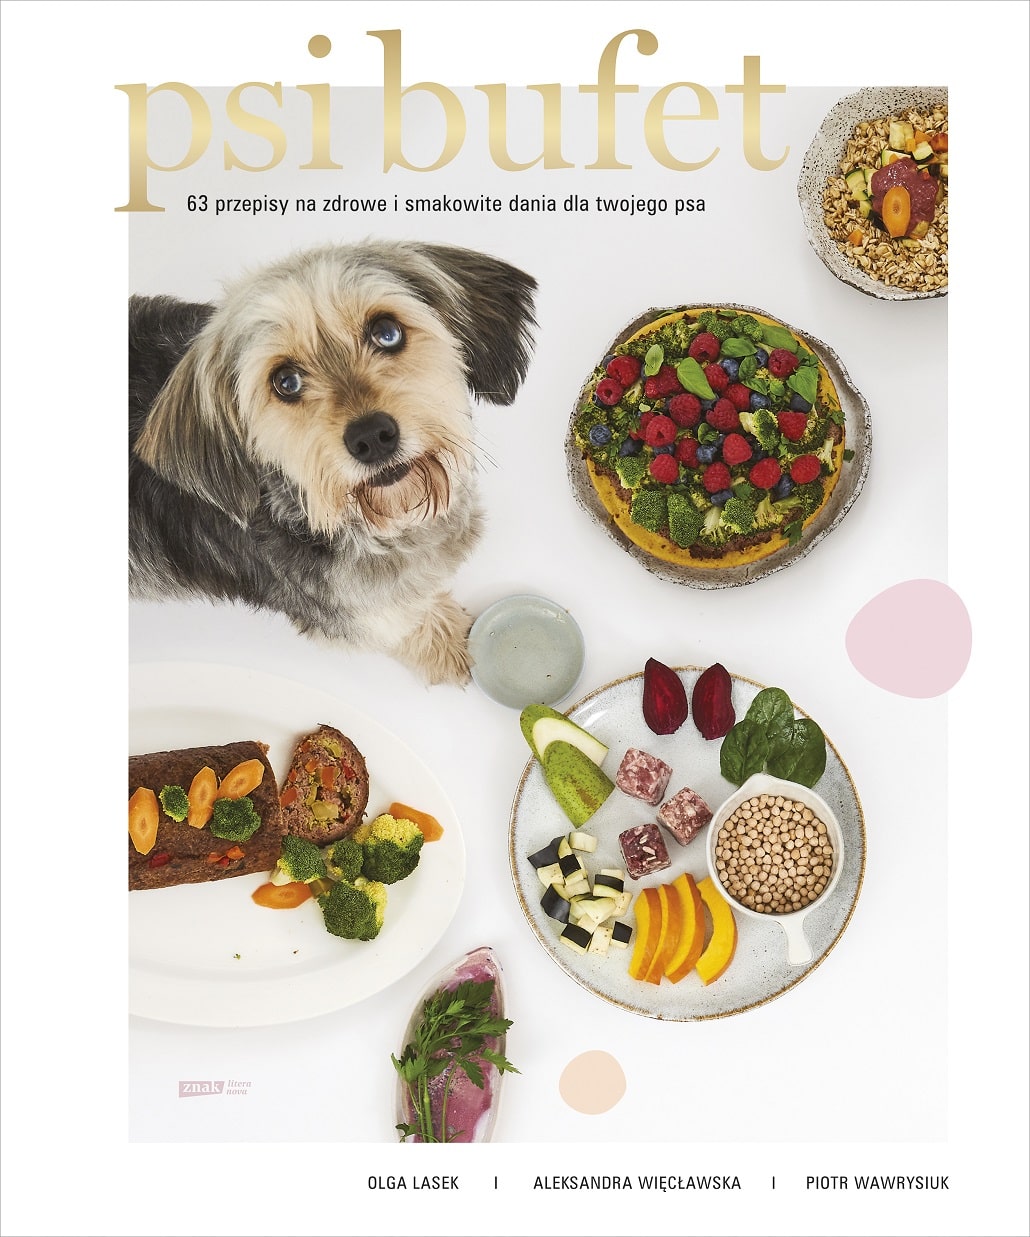 Psi bufet - książka z przepisami kucharskimi dla psów